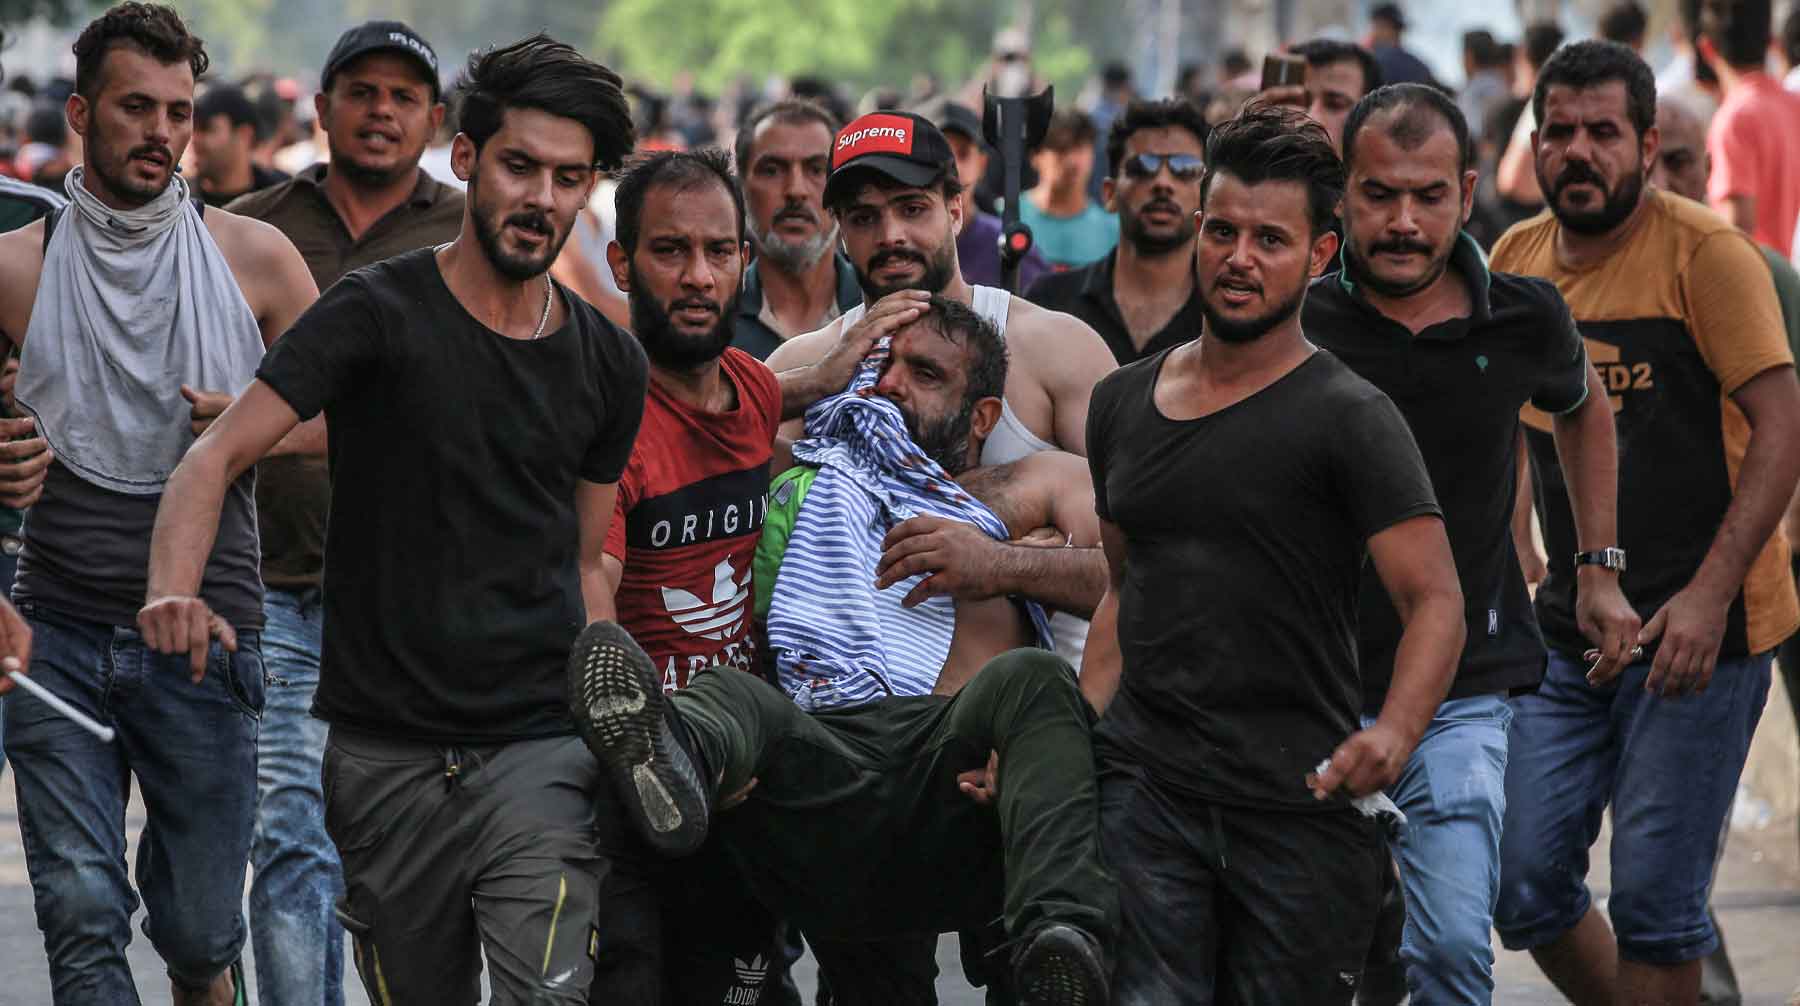 По меньшей мере пять человек убиты, число раненых пока неизвестно, отмечает телеканал Sky News Arabia Фото: © GLOBAL LOOK press / Ameer Al Mohammedaw